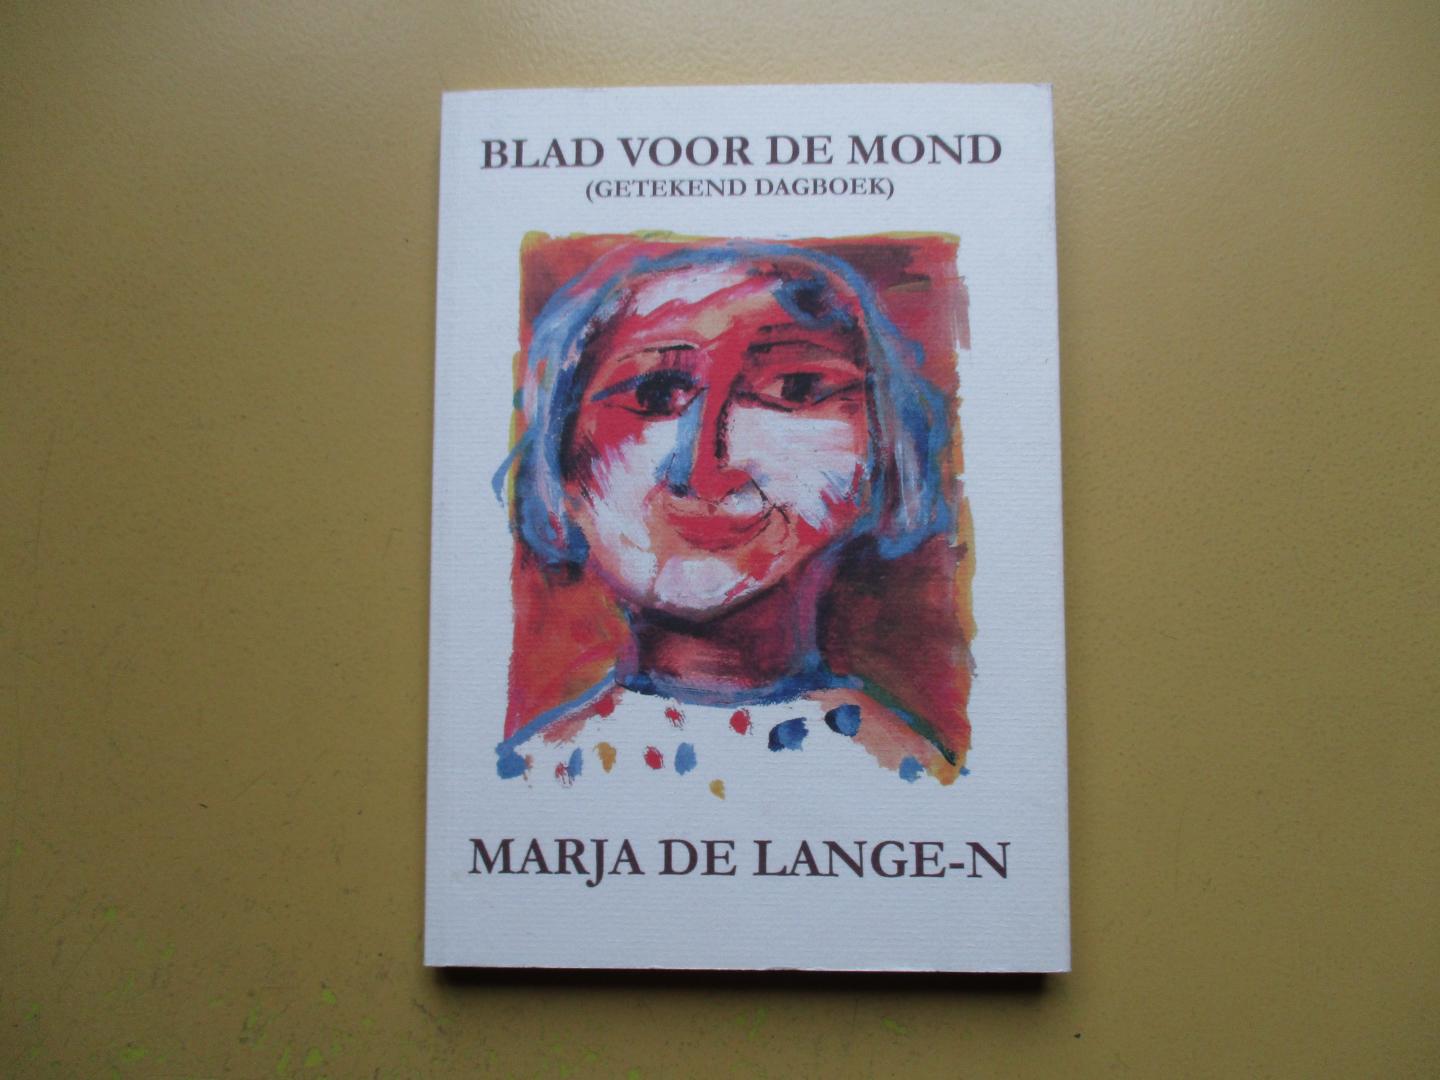 Lange-Nieuwenhuyse, Marja - Blad voor de mond.  (getekend dagboek)